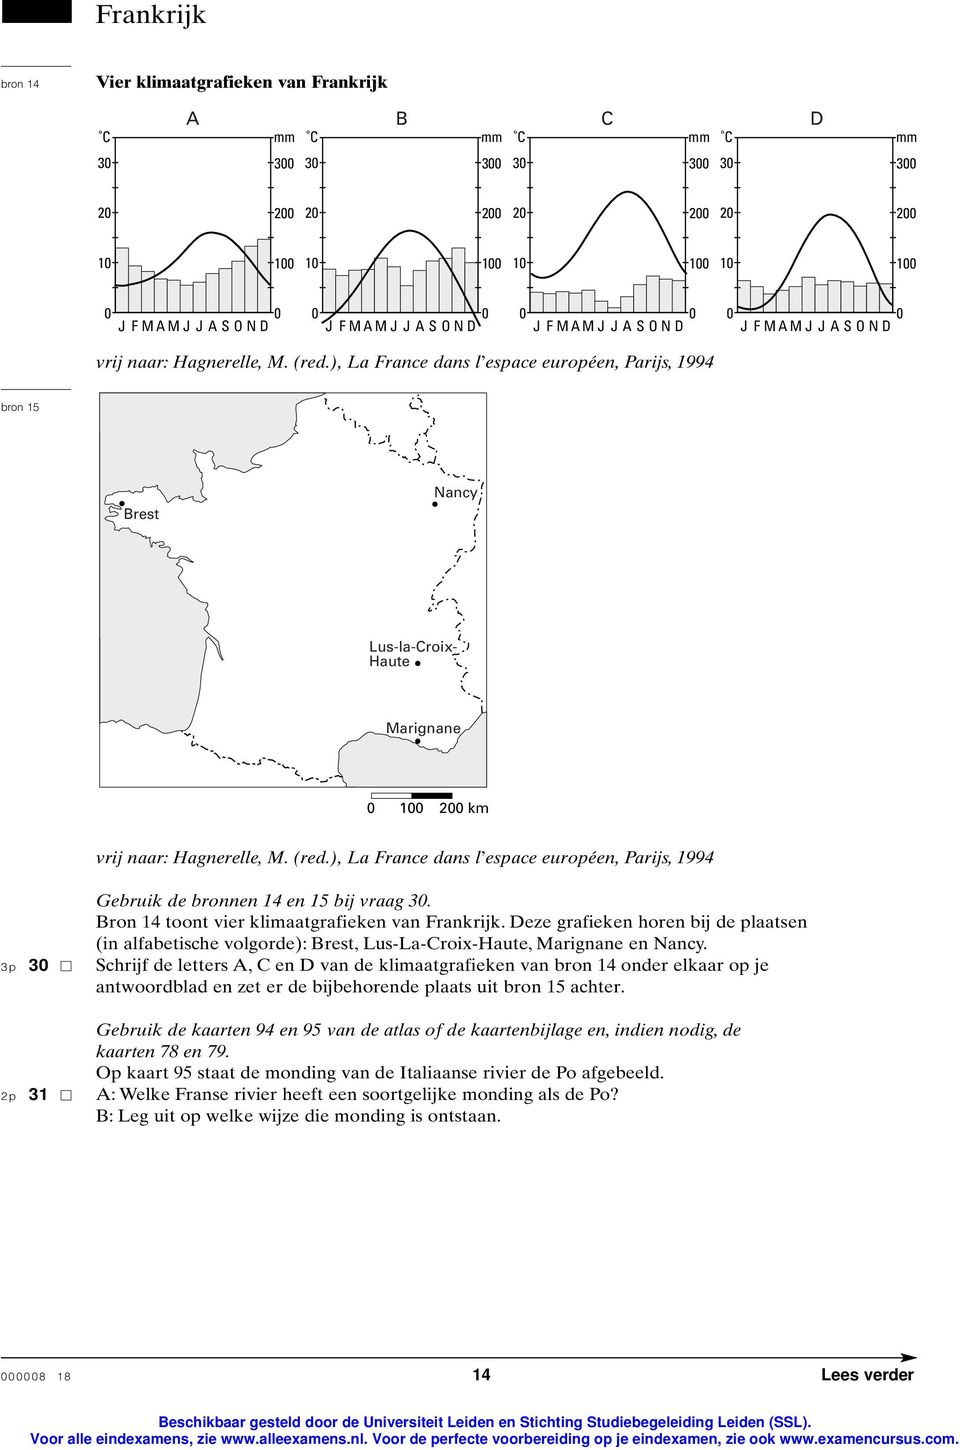 Bron 14 toont vier klimaatgrafieken van Frankrijk. Deze grafieken horen bij de plaatsen (in alfabetische volgorde): Brest, Lus-La-Croix-Haute, Marignane en Nancy.